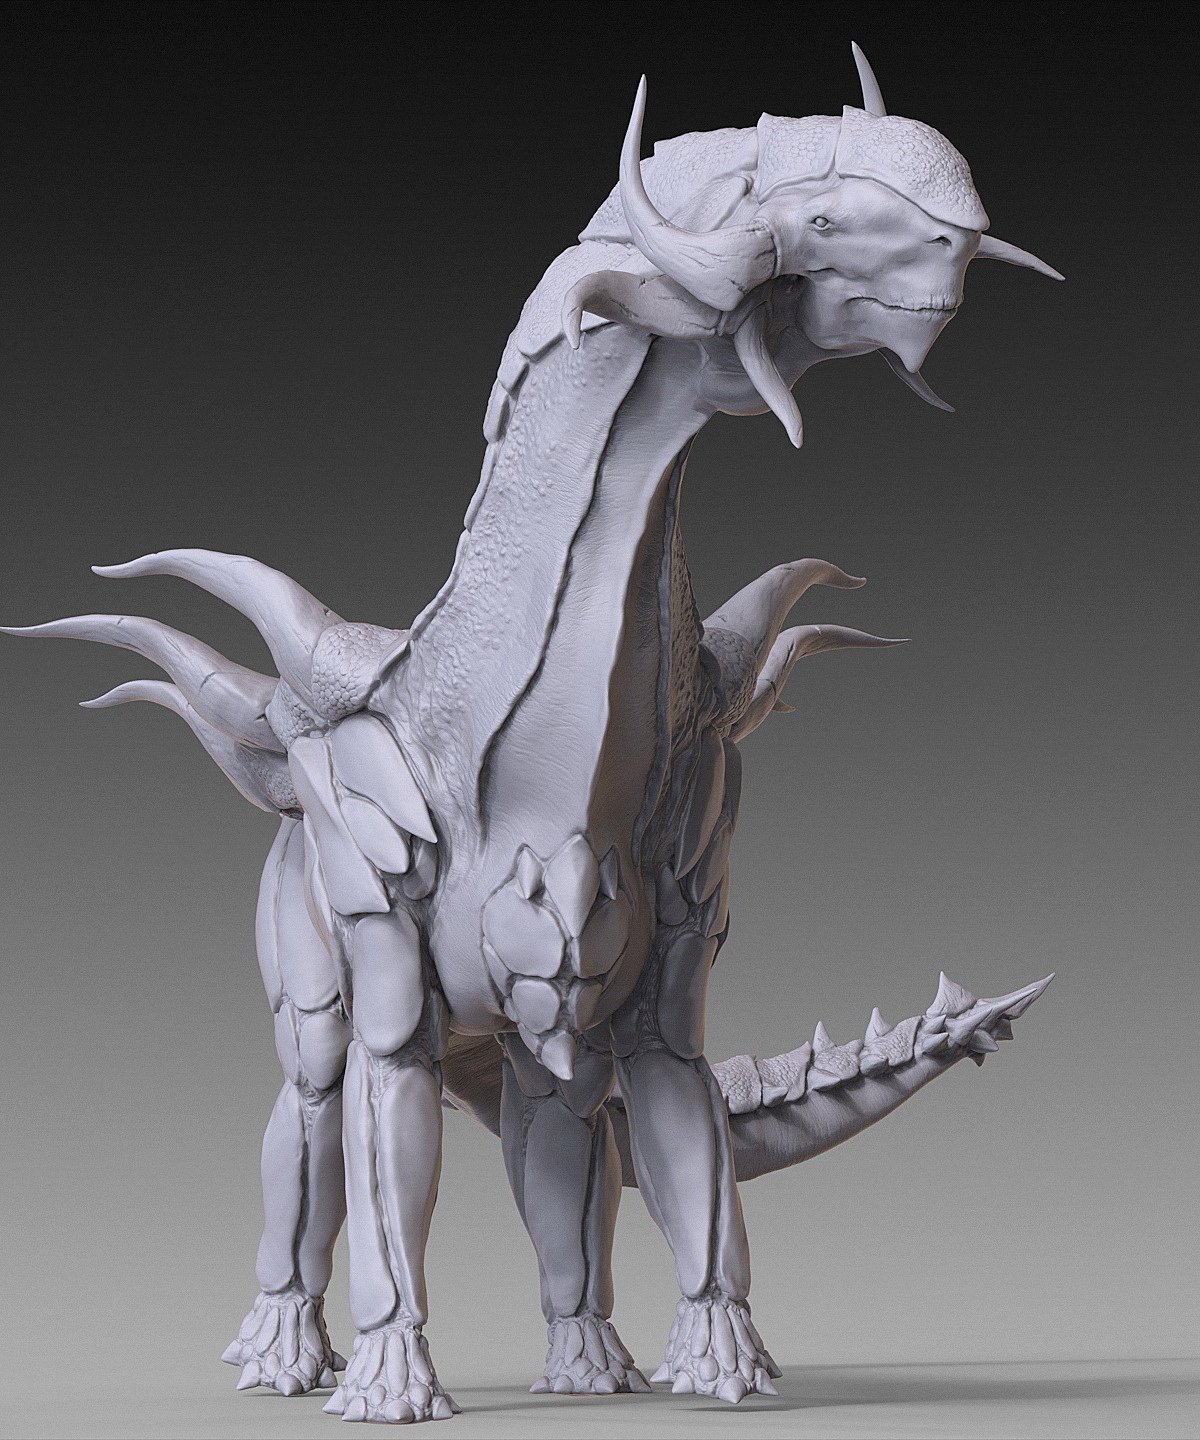 2015_08_Dino_DigitalSculpting_02.jpg